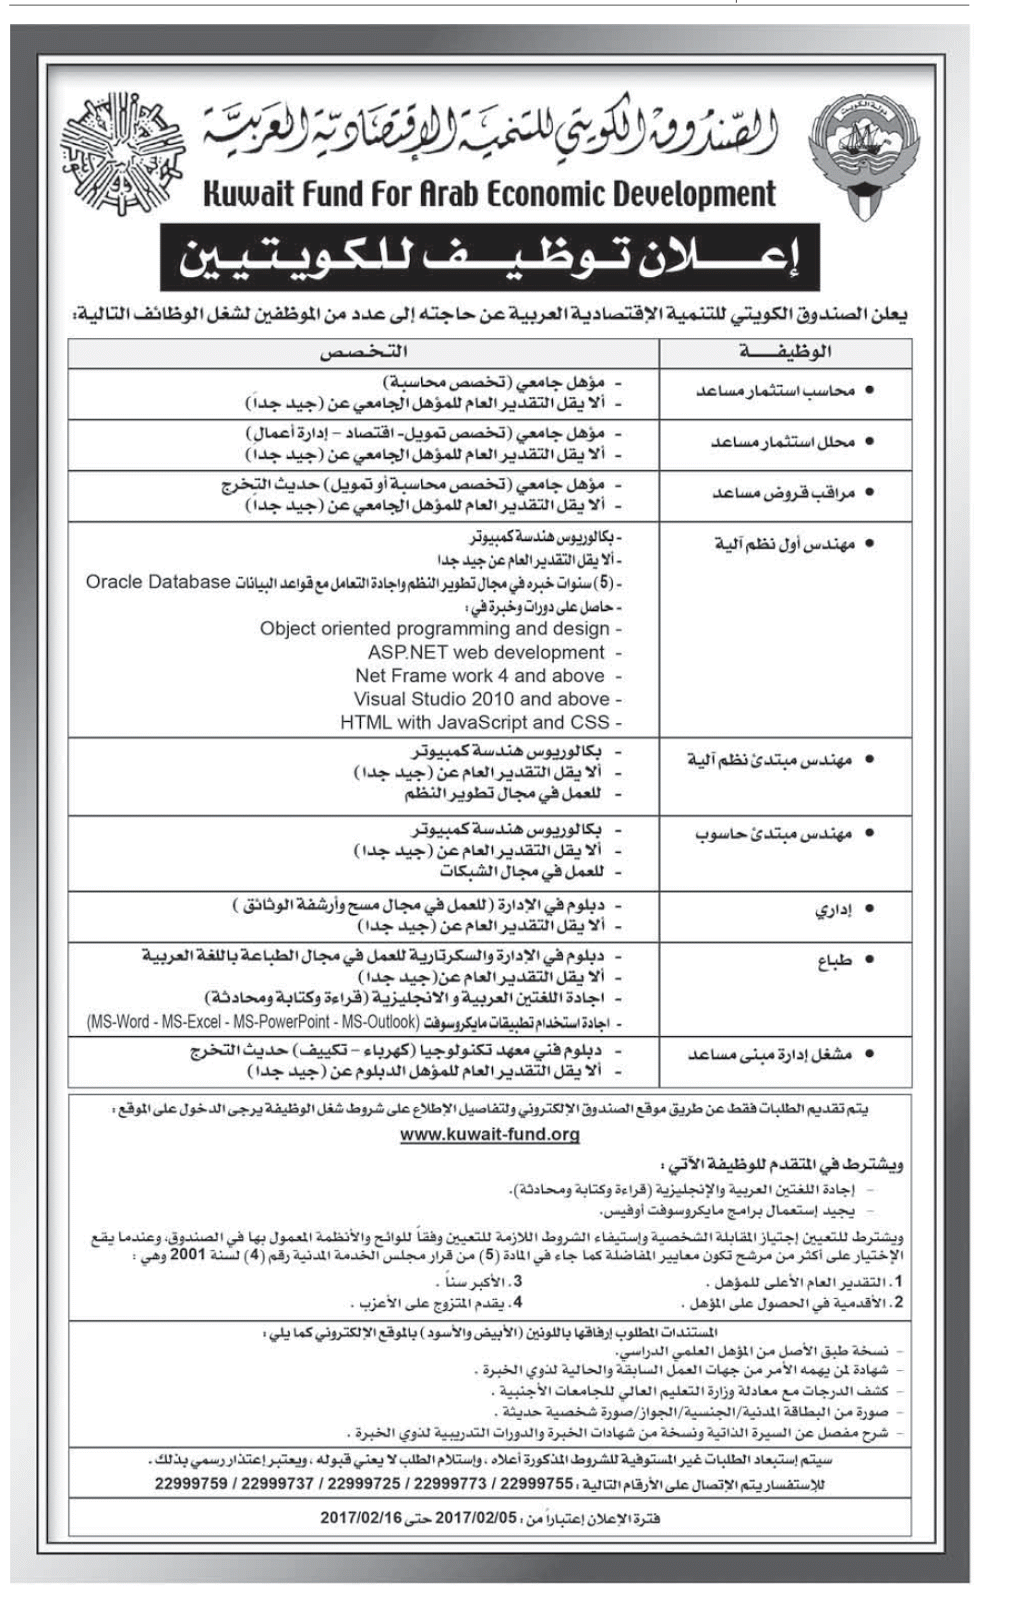 الصندوق الكويتى للتنمية الاقتصادية العربية